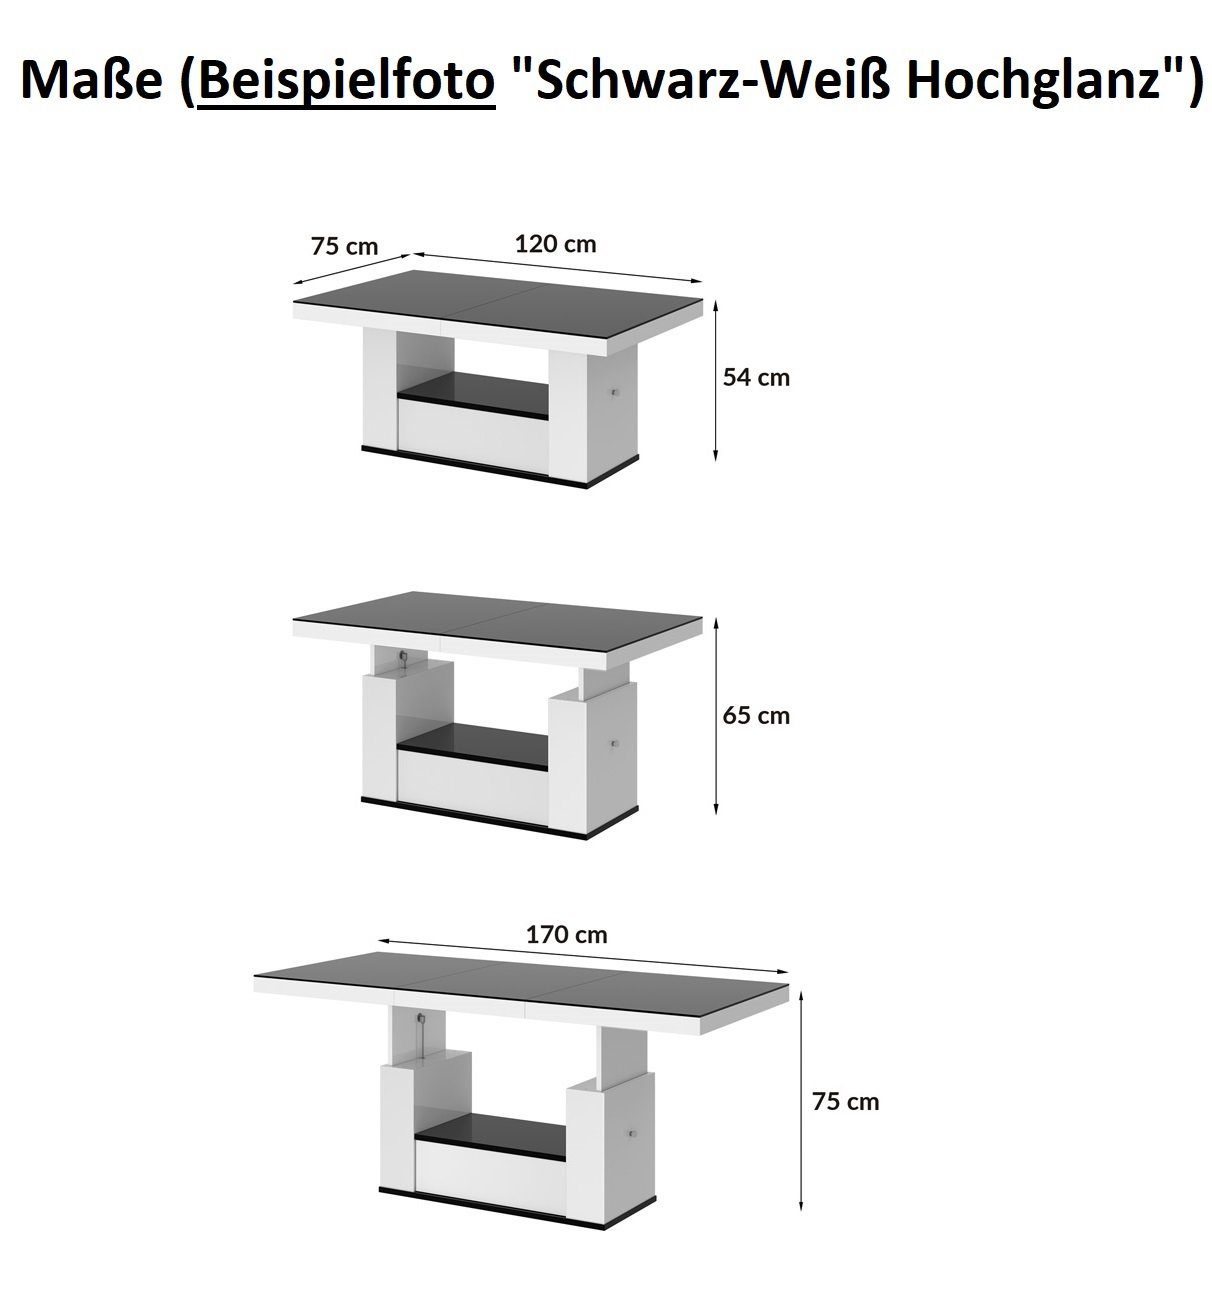 ausziehbar Schublade Hochglanz / Grau designimpex Hochglanz Weiß Couchtisch höhenverstellbar Grau HM-111 / Hochglanz Weiß